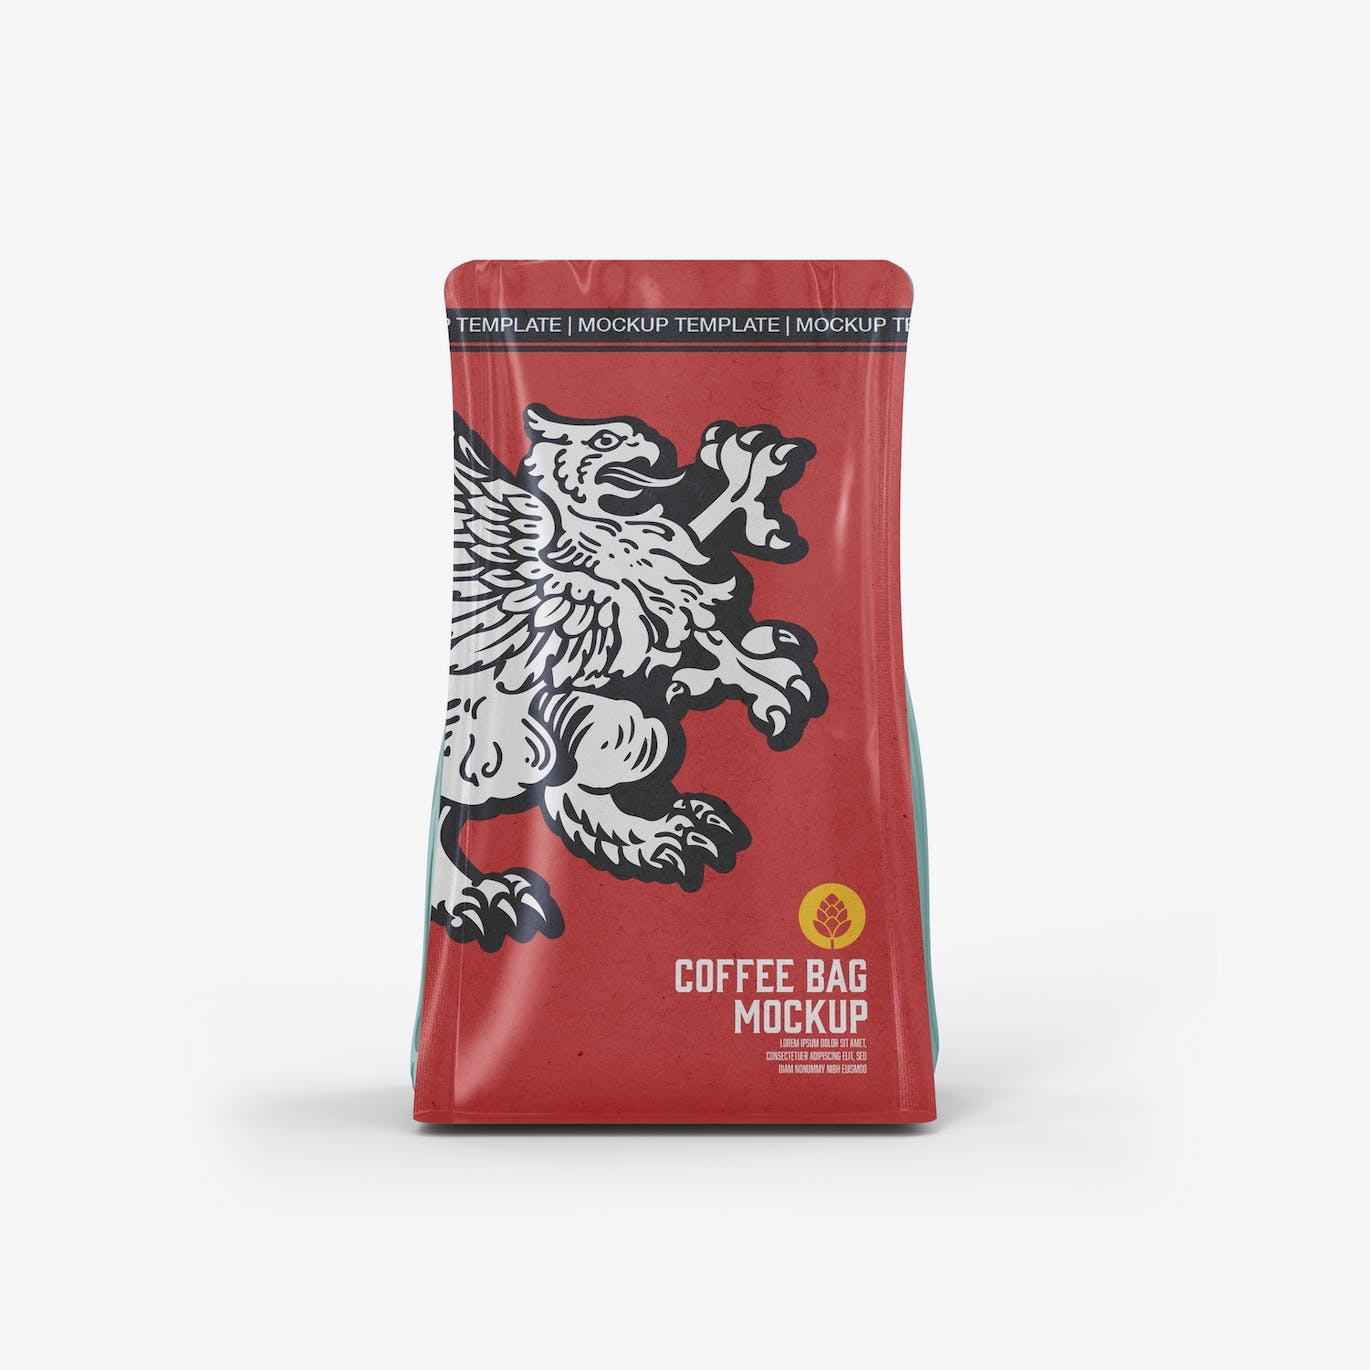 牛皮纸咖啡袋包装展示样机图 Set Kraft Paper Coffee Bag Mockup 样机素材 第9张